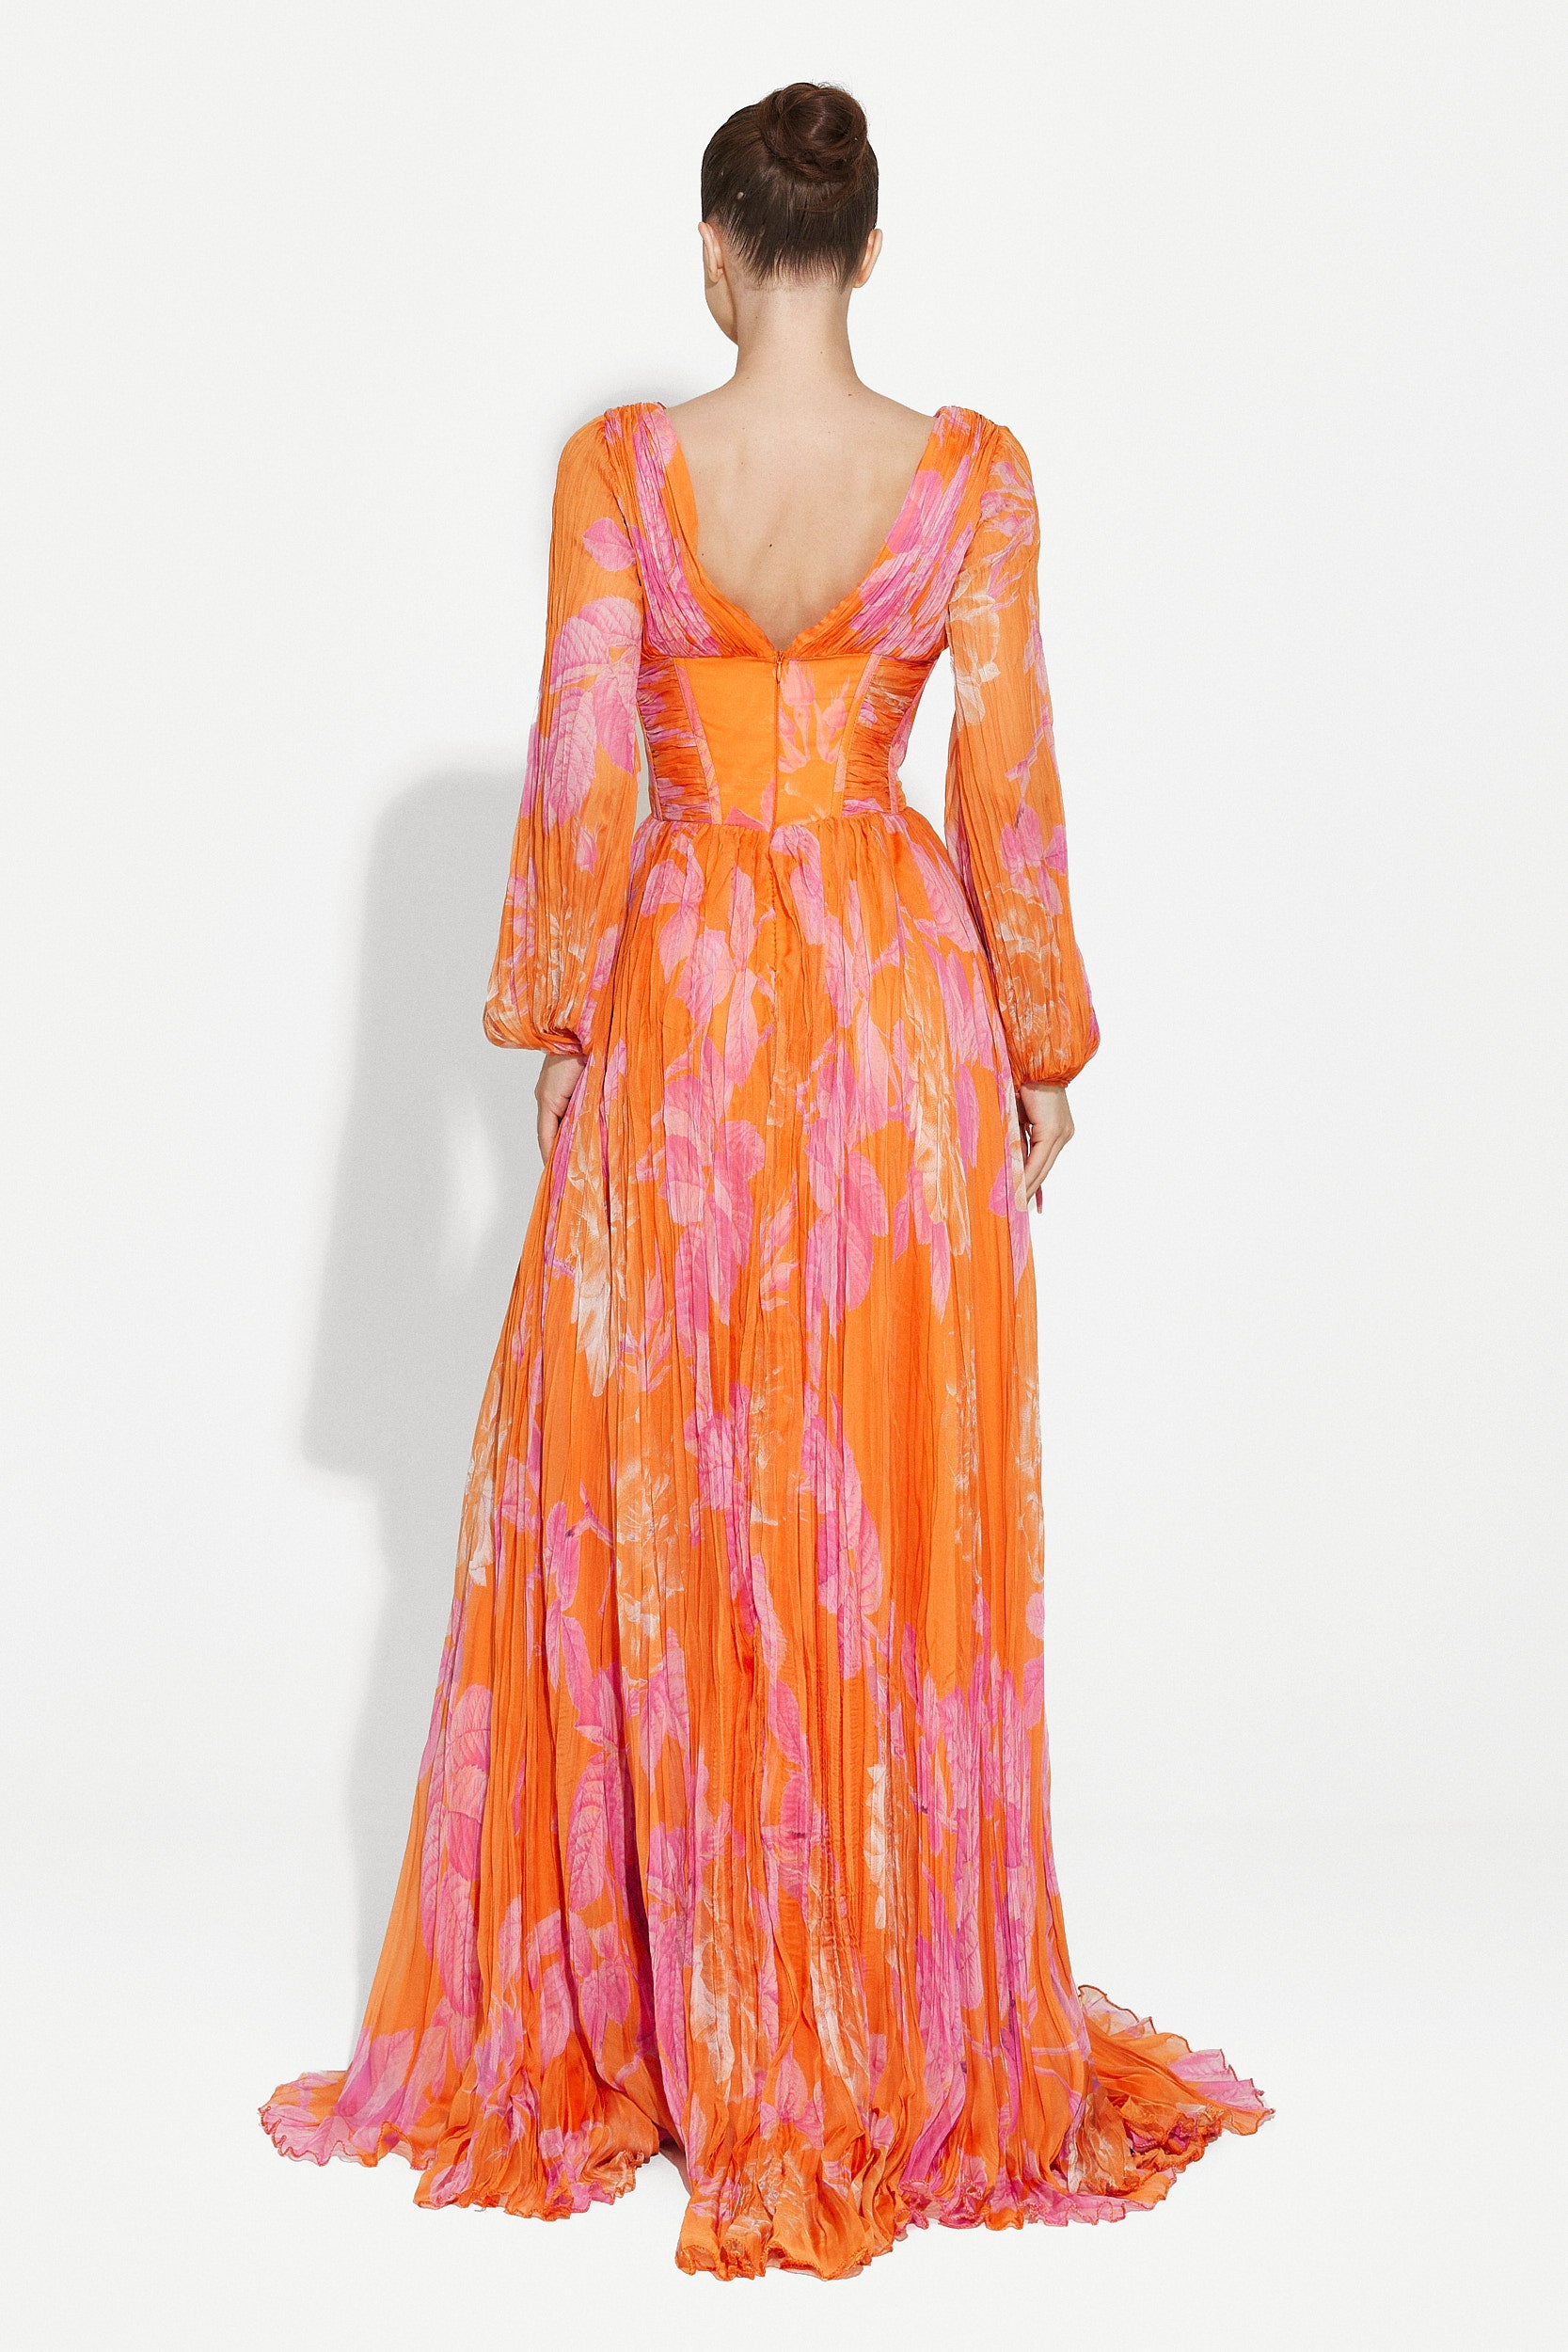 Sintia Bogas hosszú narancssárga női ruha